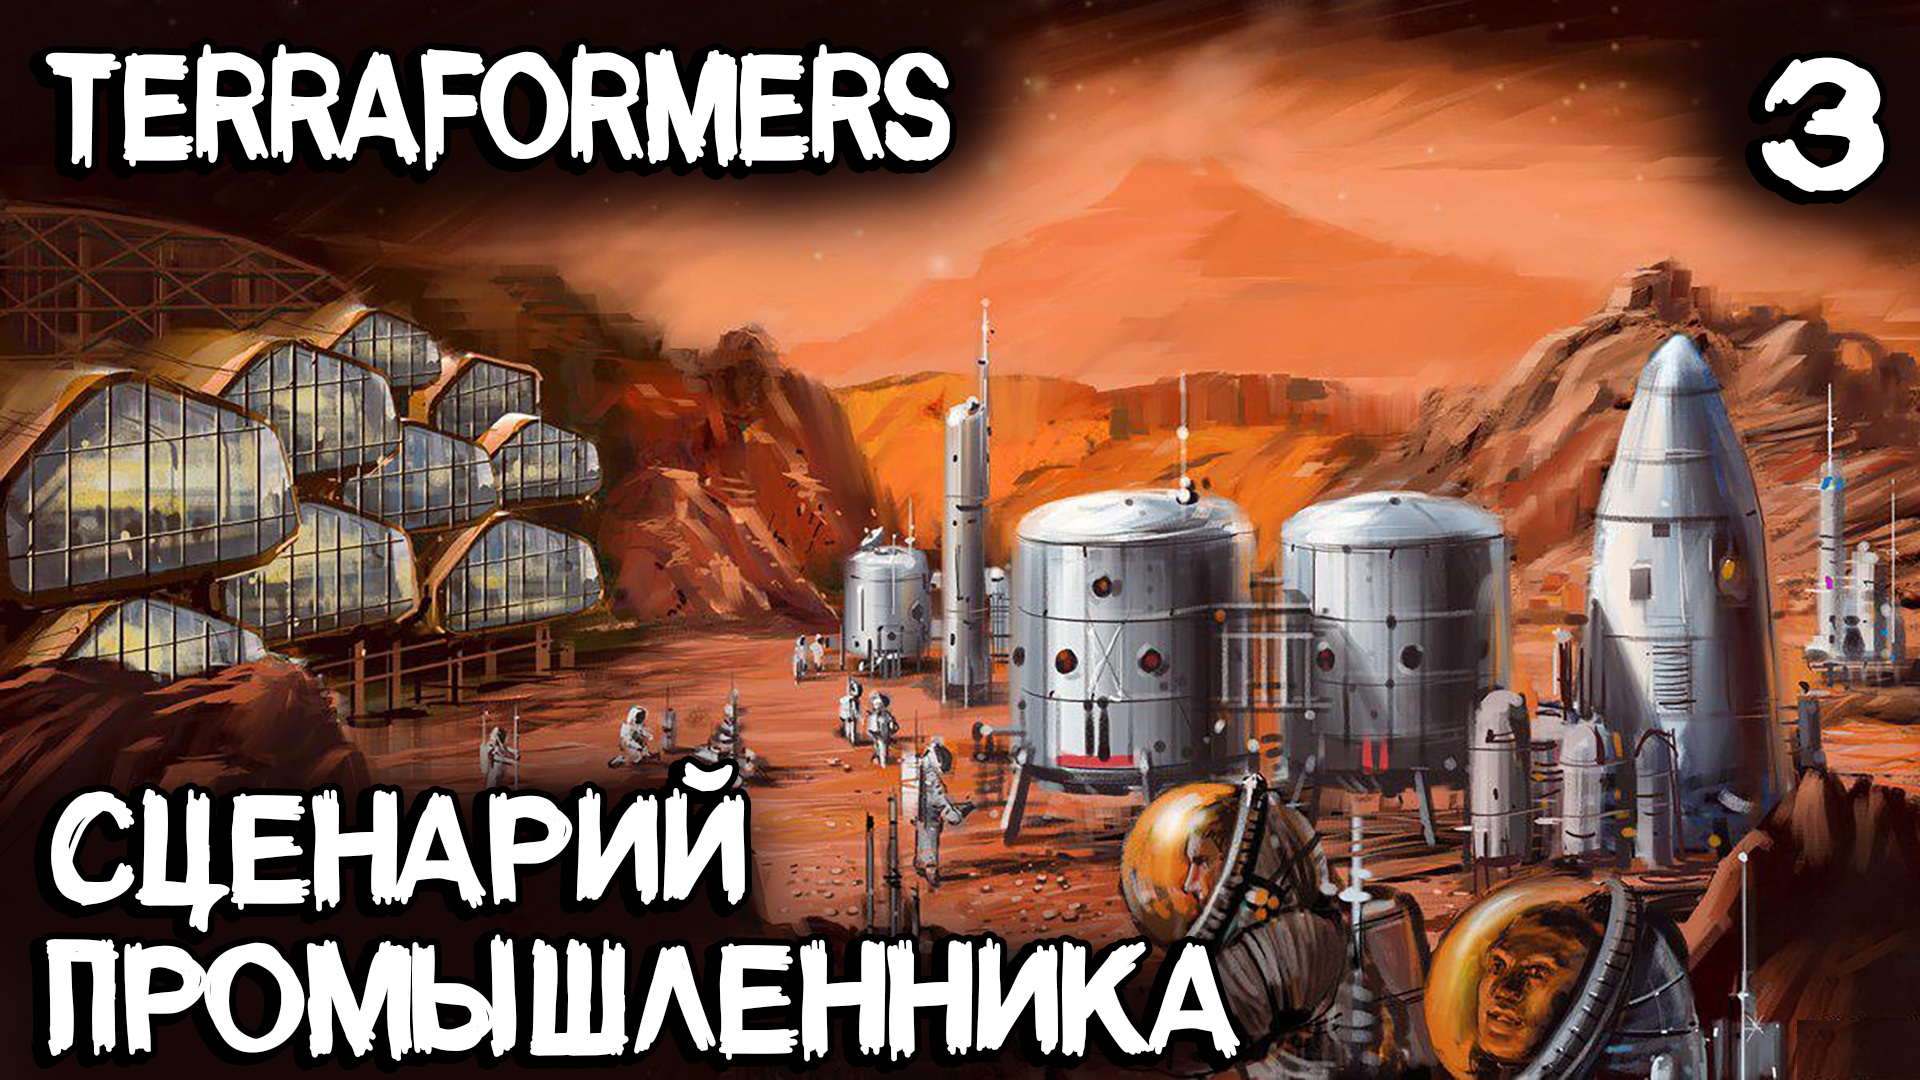 Terraformers - обзор сценариев игры и прохождение промышленного сценария #3